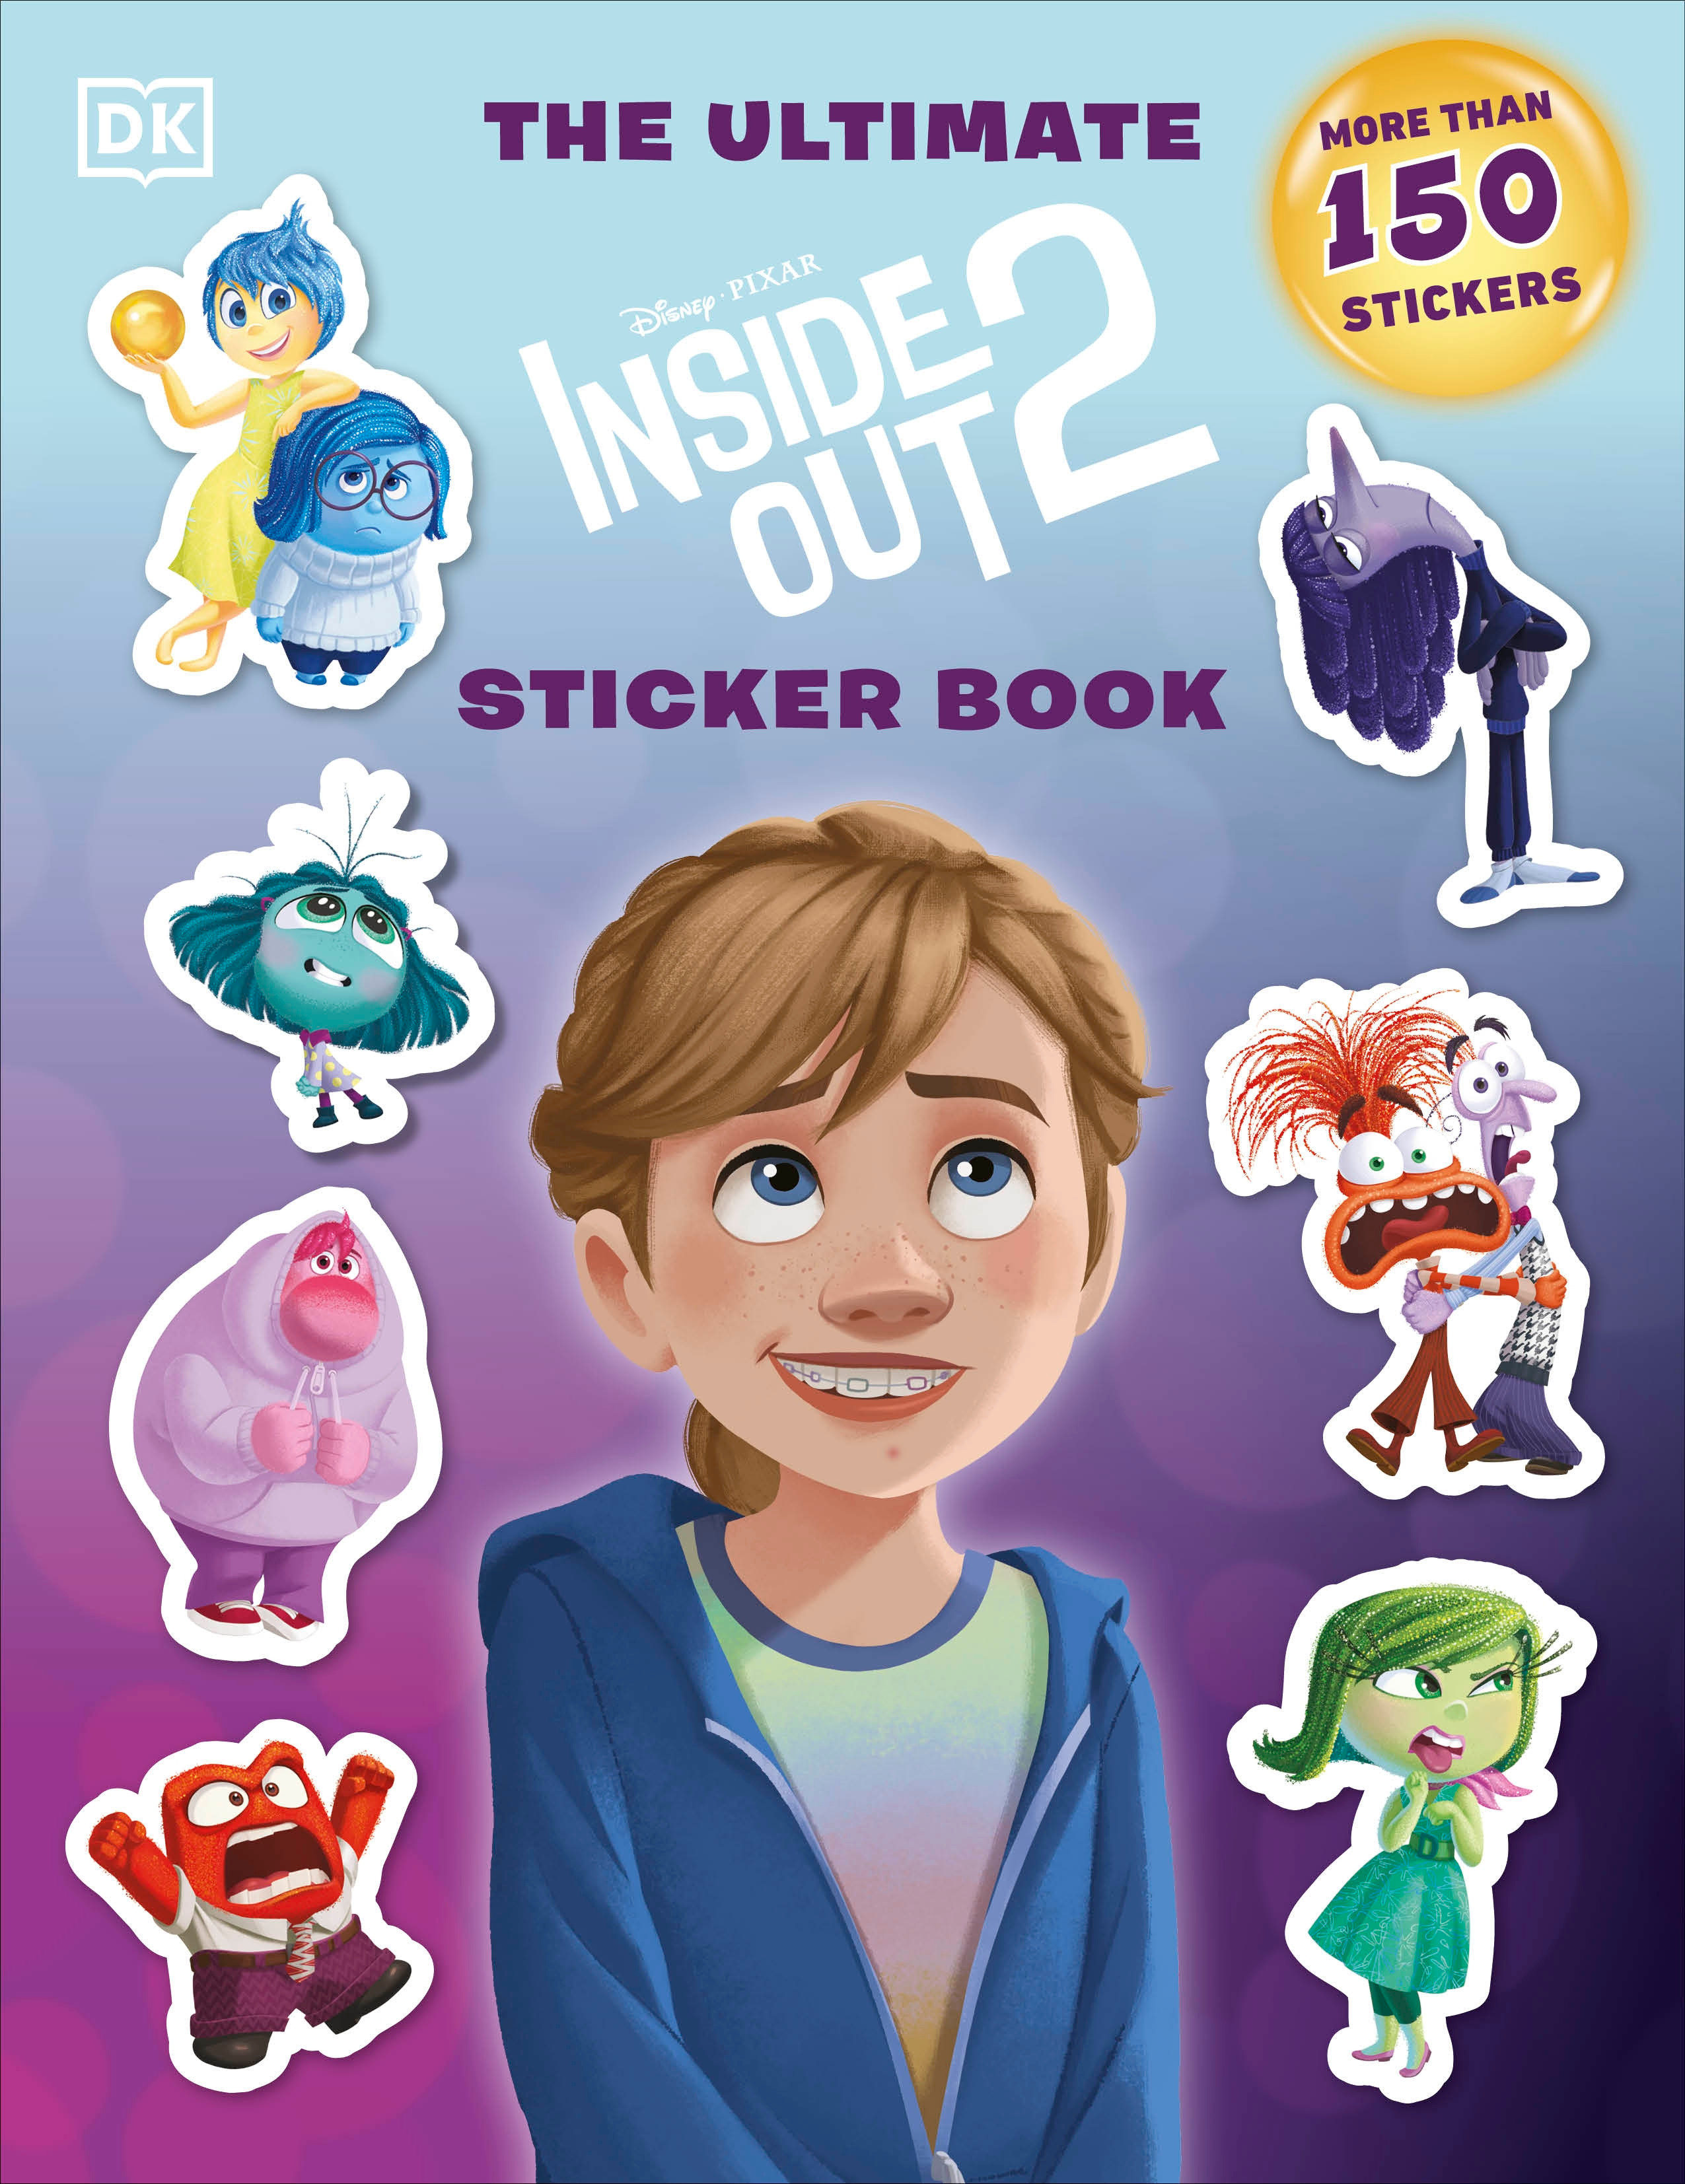 Disney Pixar Inside Out 2 Sticker Book Soft Cover